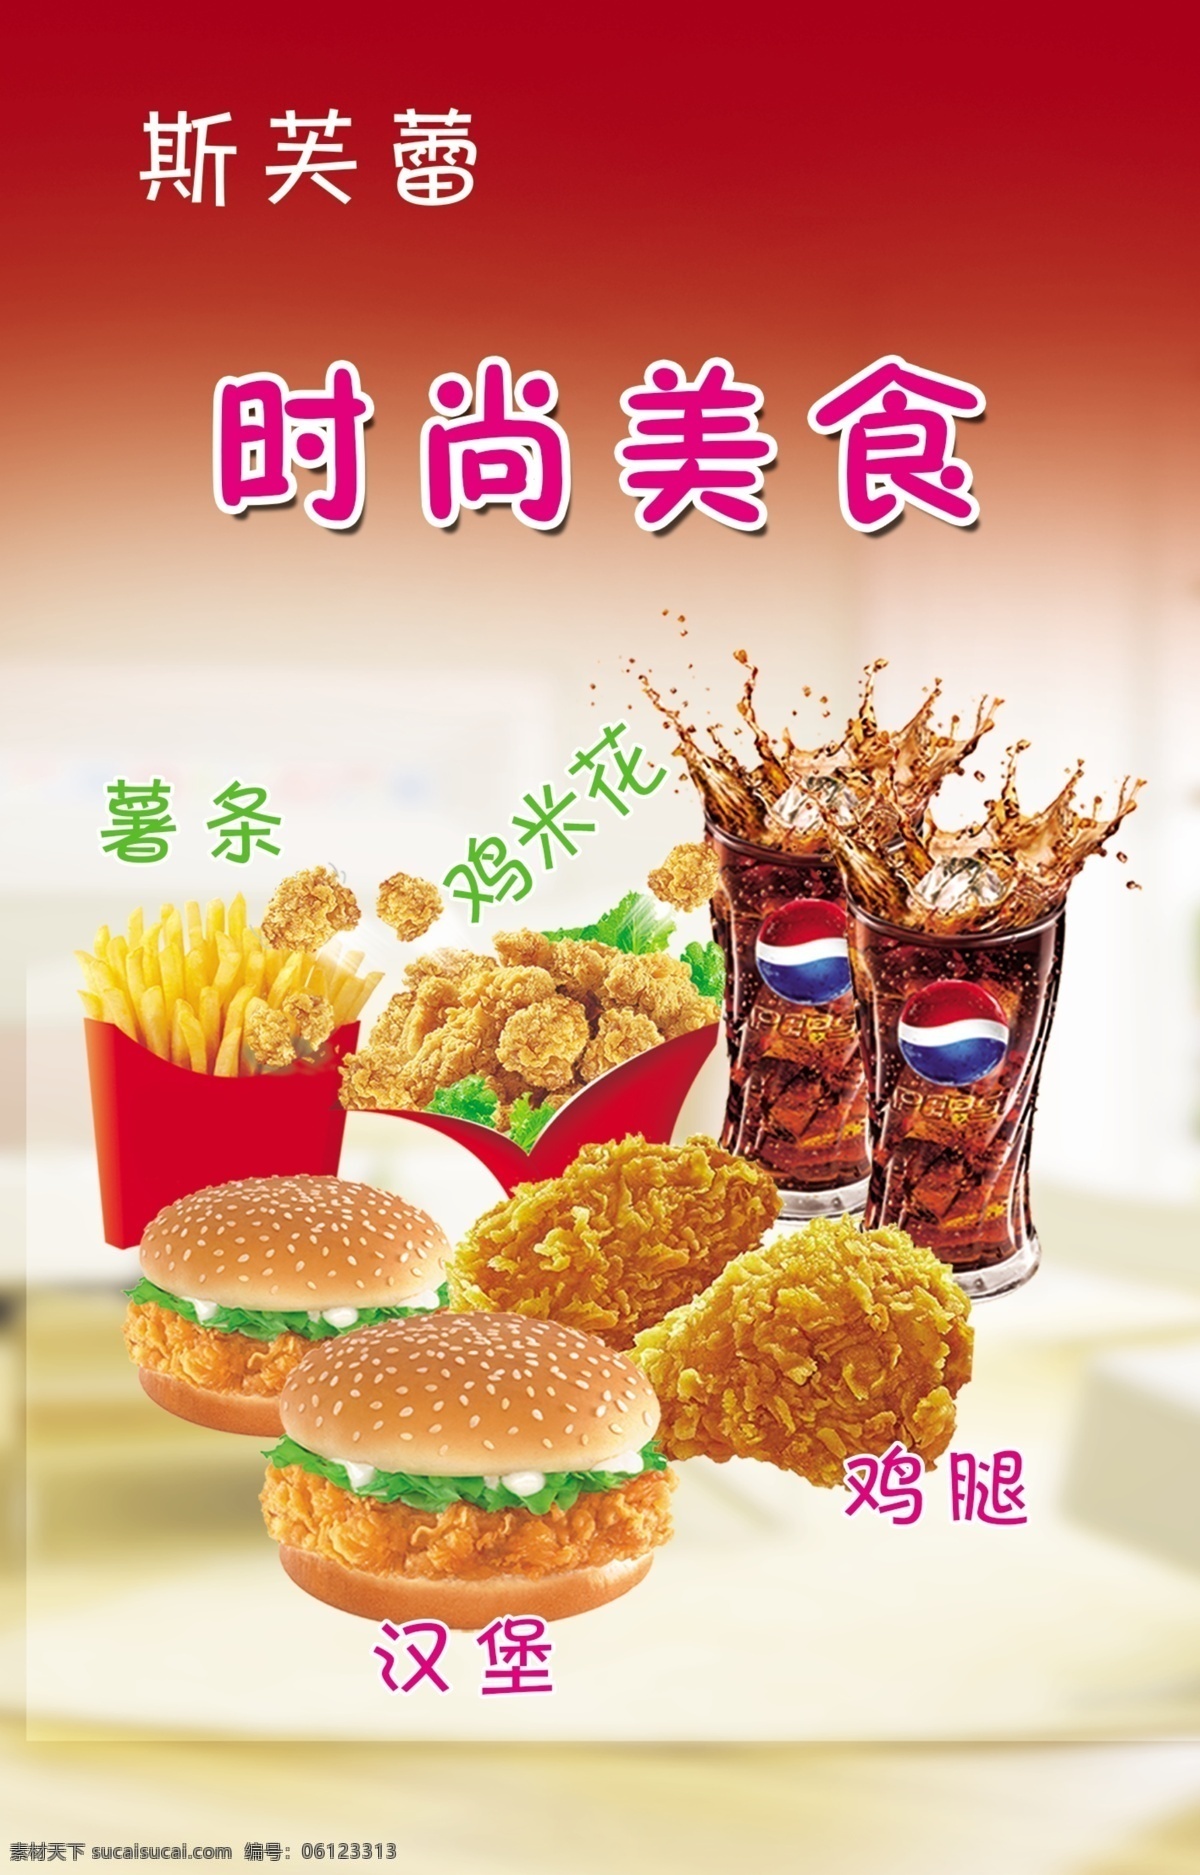 汉堡 薯条 鸡 米 花 鸡米花 鸡腿 美食 宣传海报 促销宣传广告 psd分层 设计素材 设计背景 白色